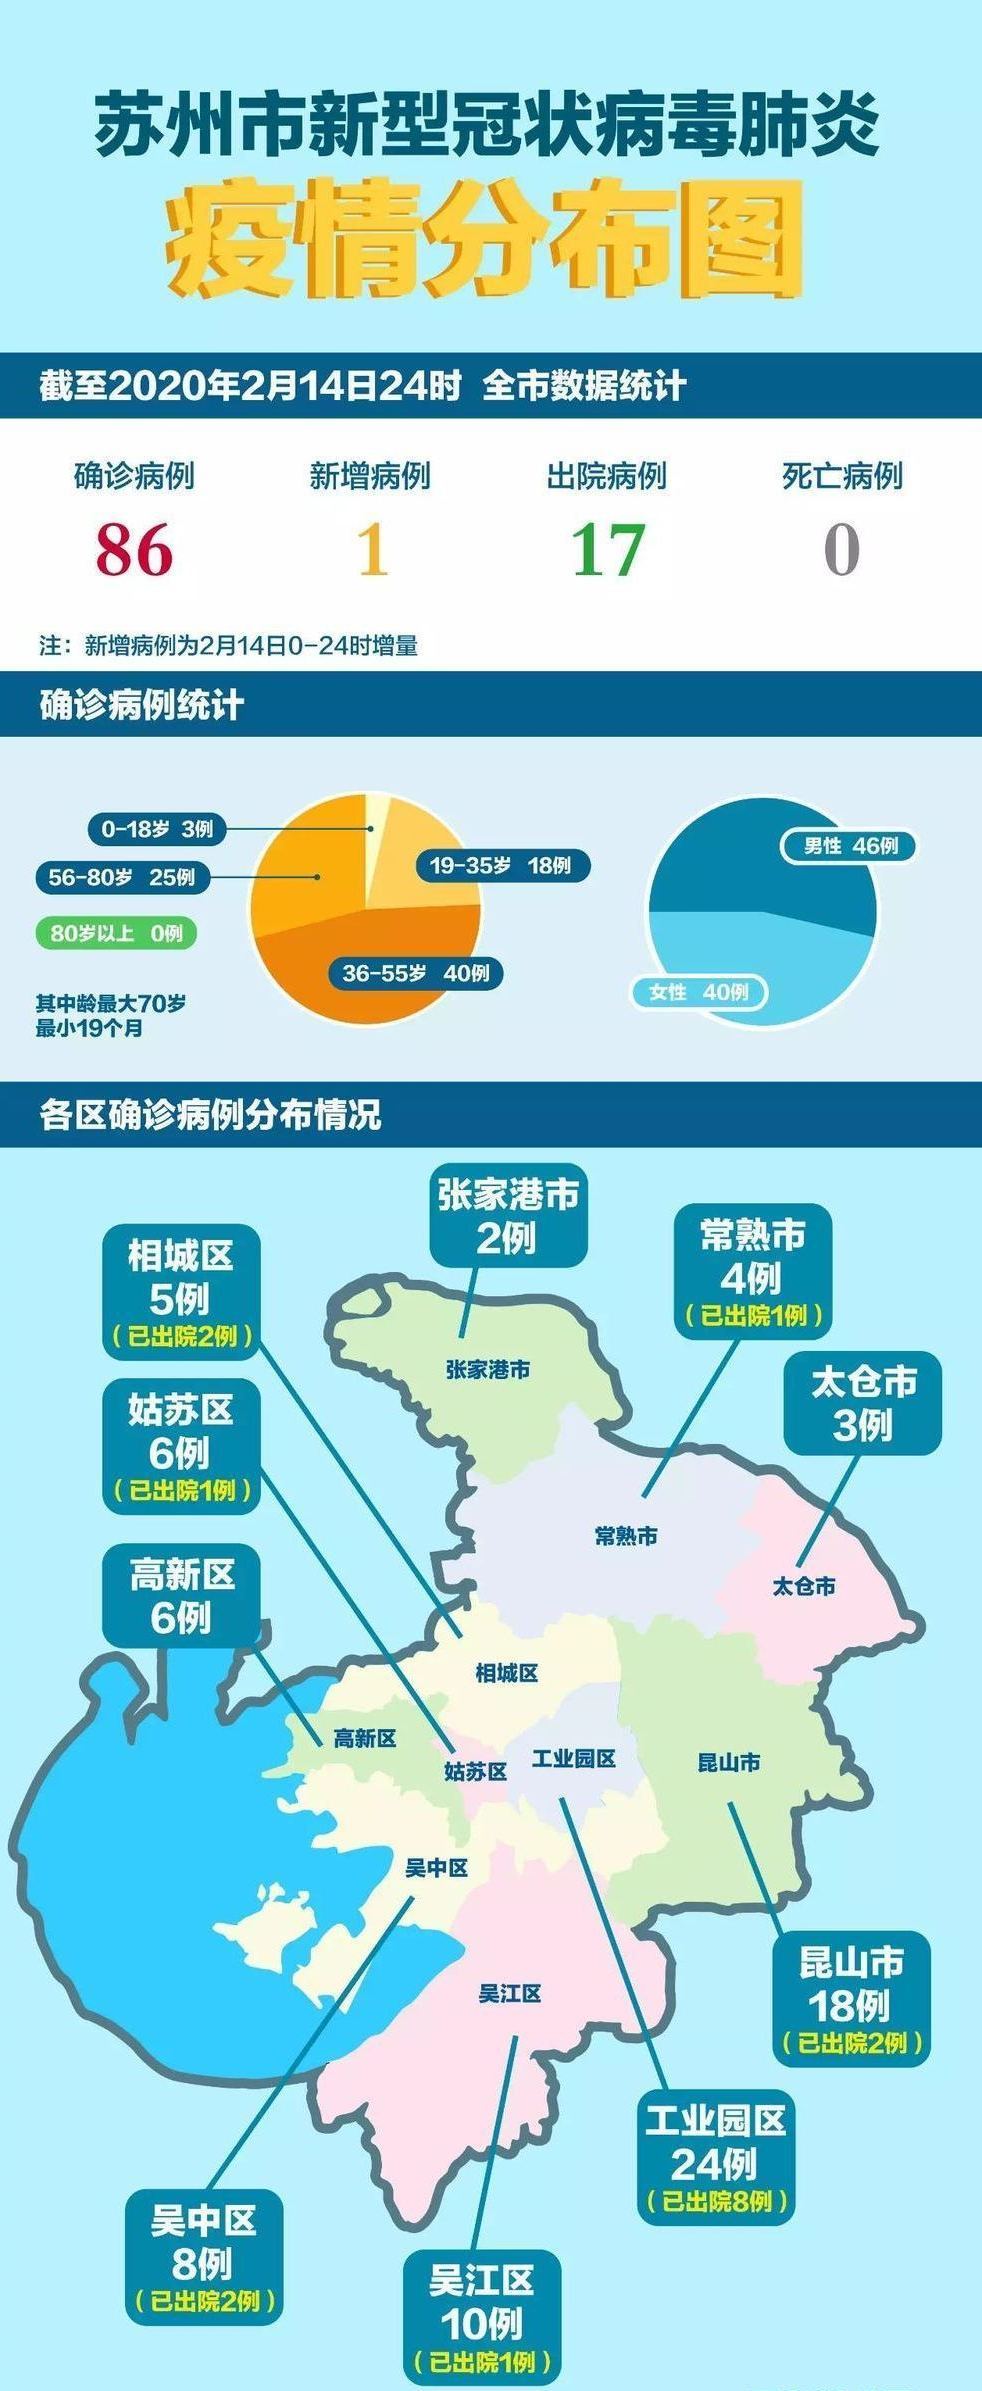 目前,江苏省追踪到密切接触者12373人,已解除医学观察9375人,尚有